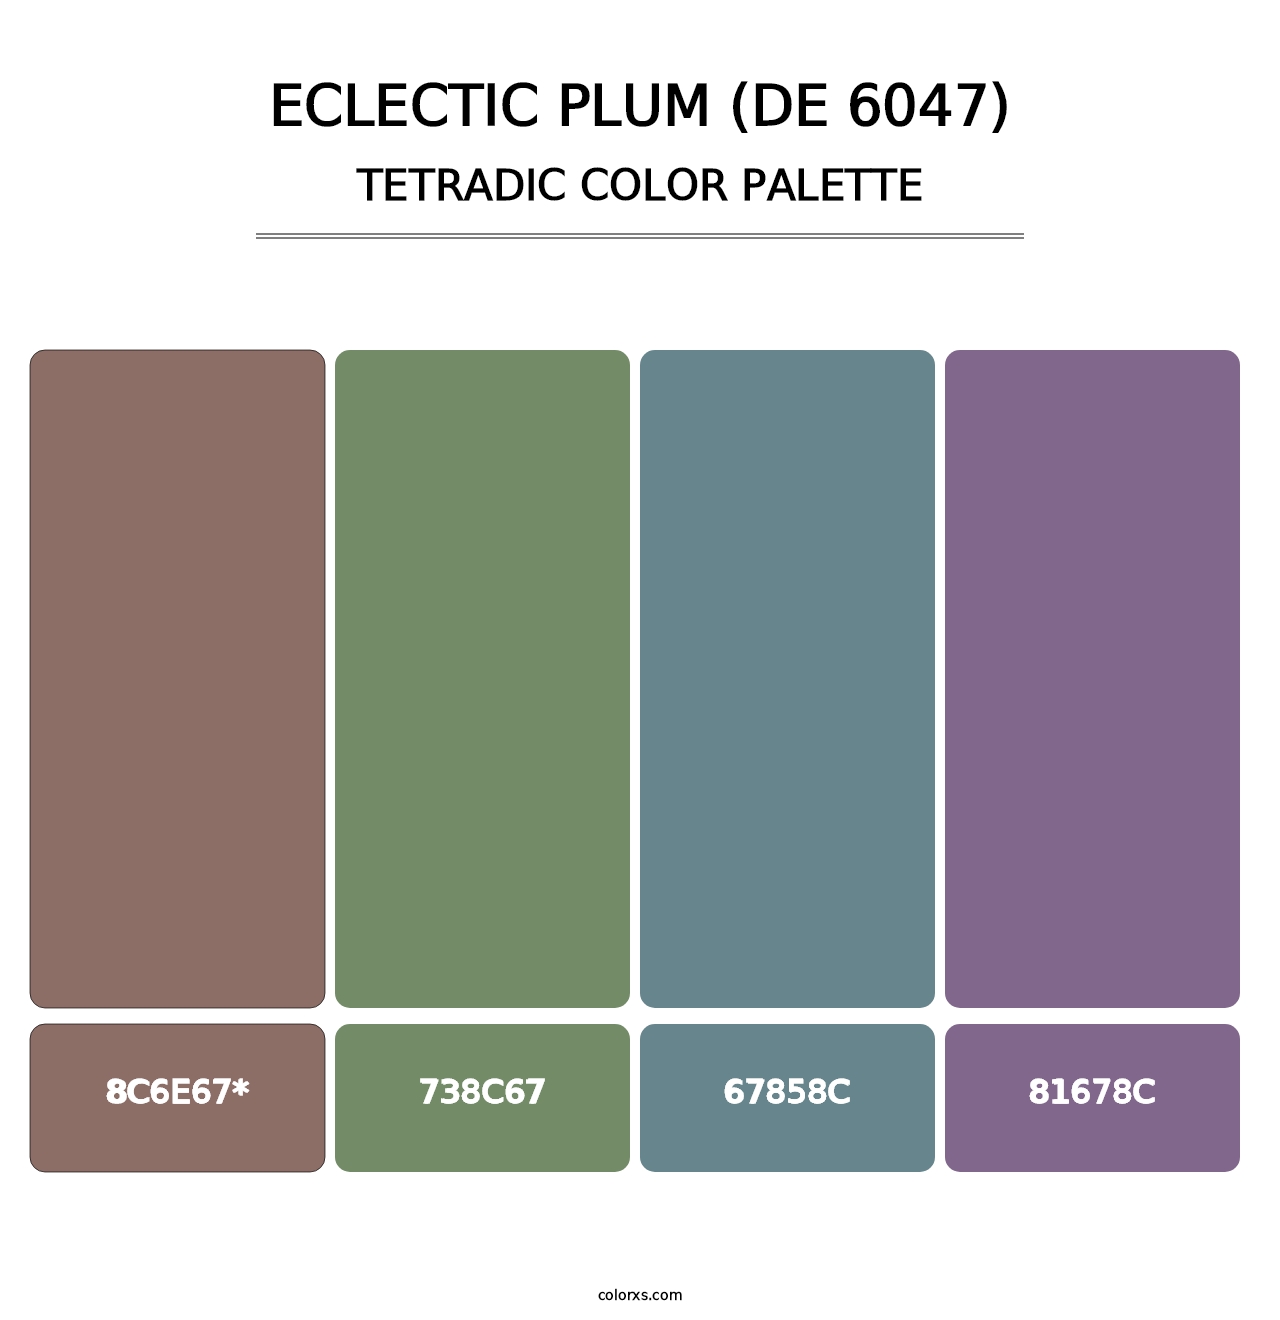 Eclectic Plum (DE 6047) - Tetradic Color Palette